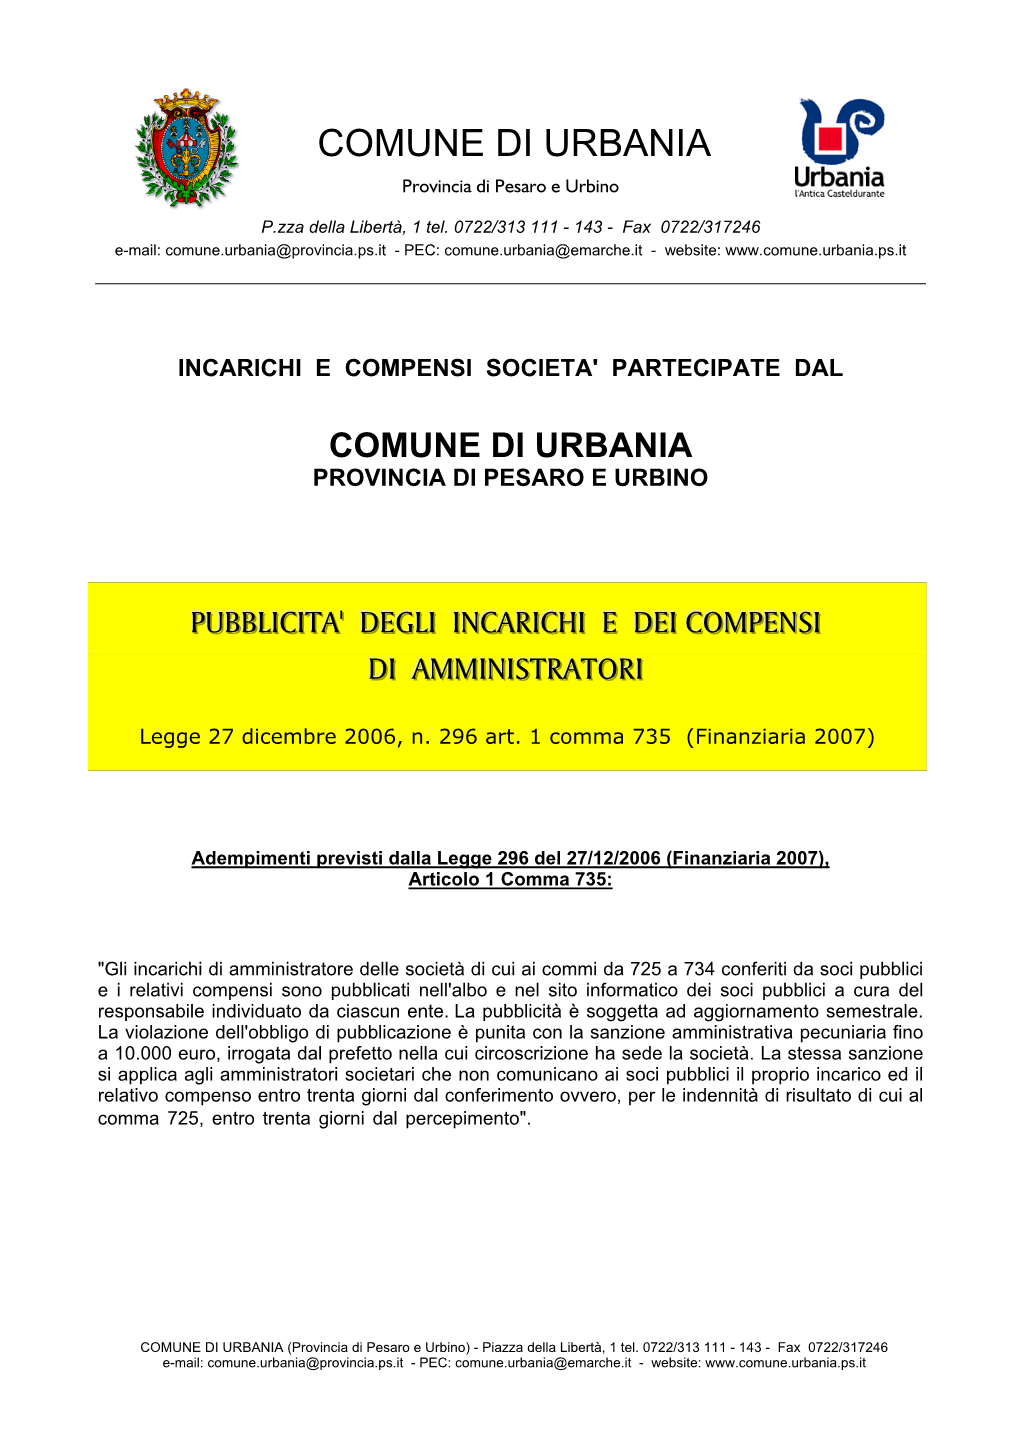 COMUNE DI URBANIA Provincia Di Pesaro E Urbino